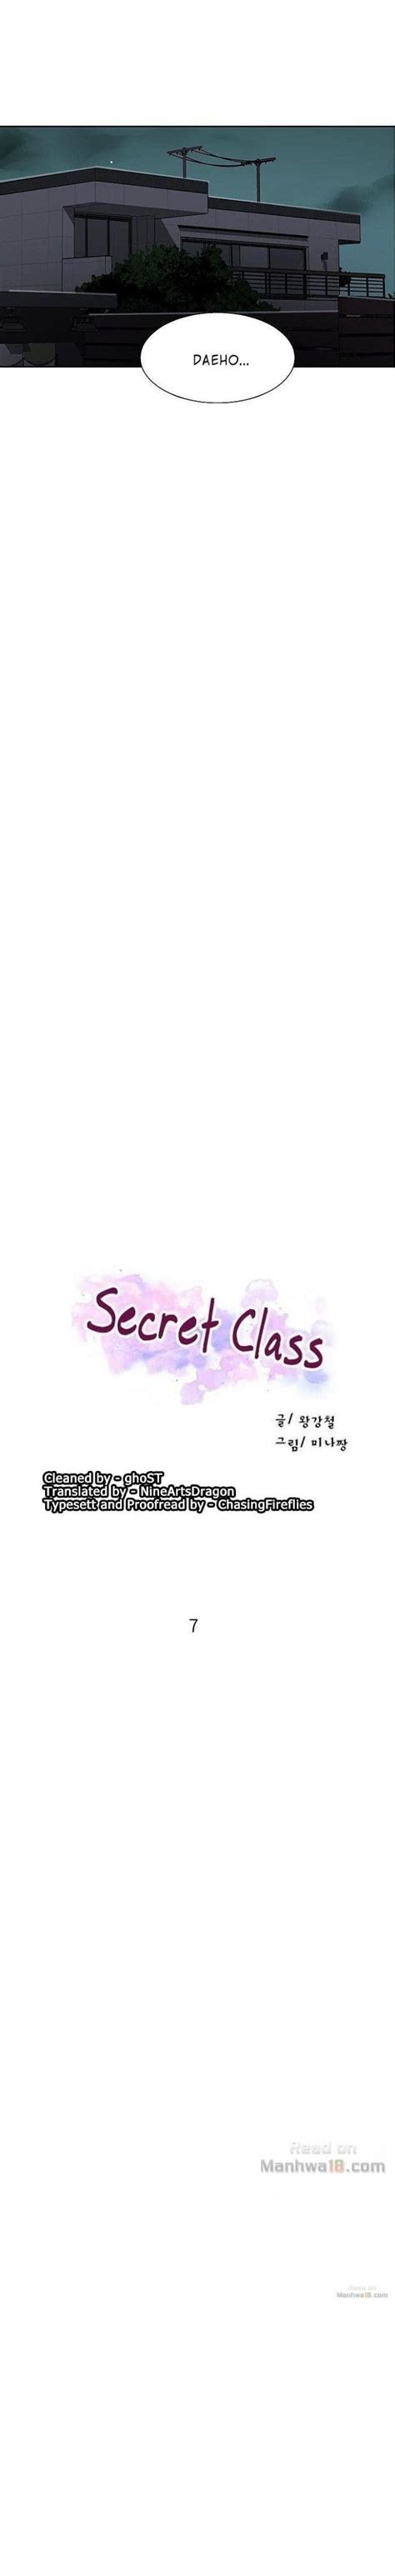 Secret Class Chapter 7 Secret Class Manhwa Online